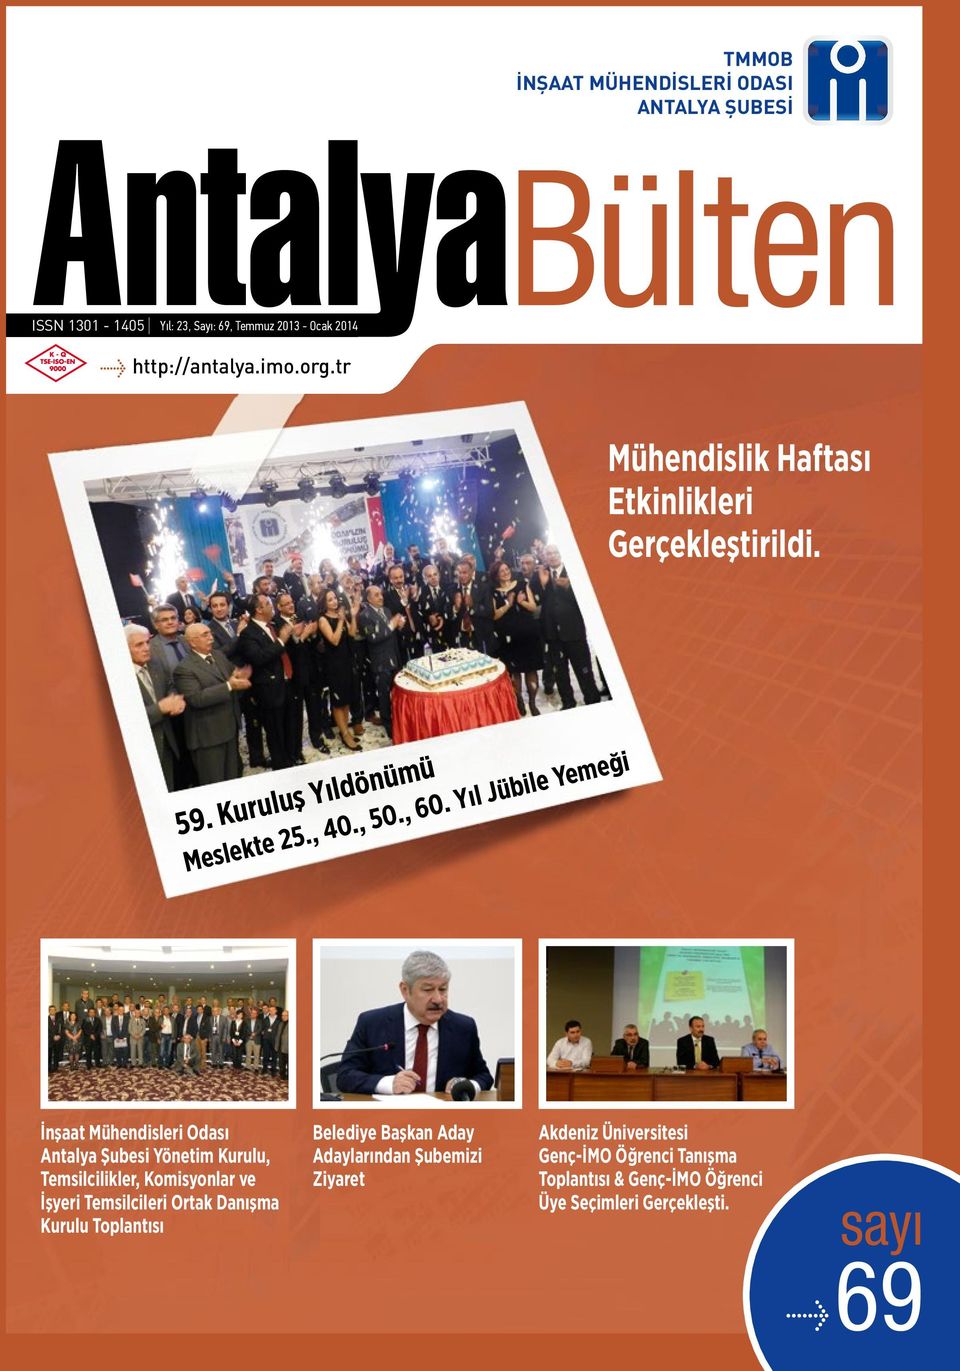 Yıl Jübile Yemeği İnşaat Mühendisleri Odası Antalya Şubesi Yönetim Kurulu, Temsilcilikler, Komisyonlar ve İşyeri Temsilcileri Ortak